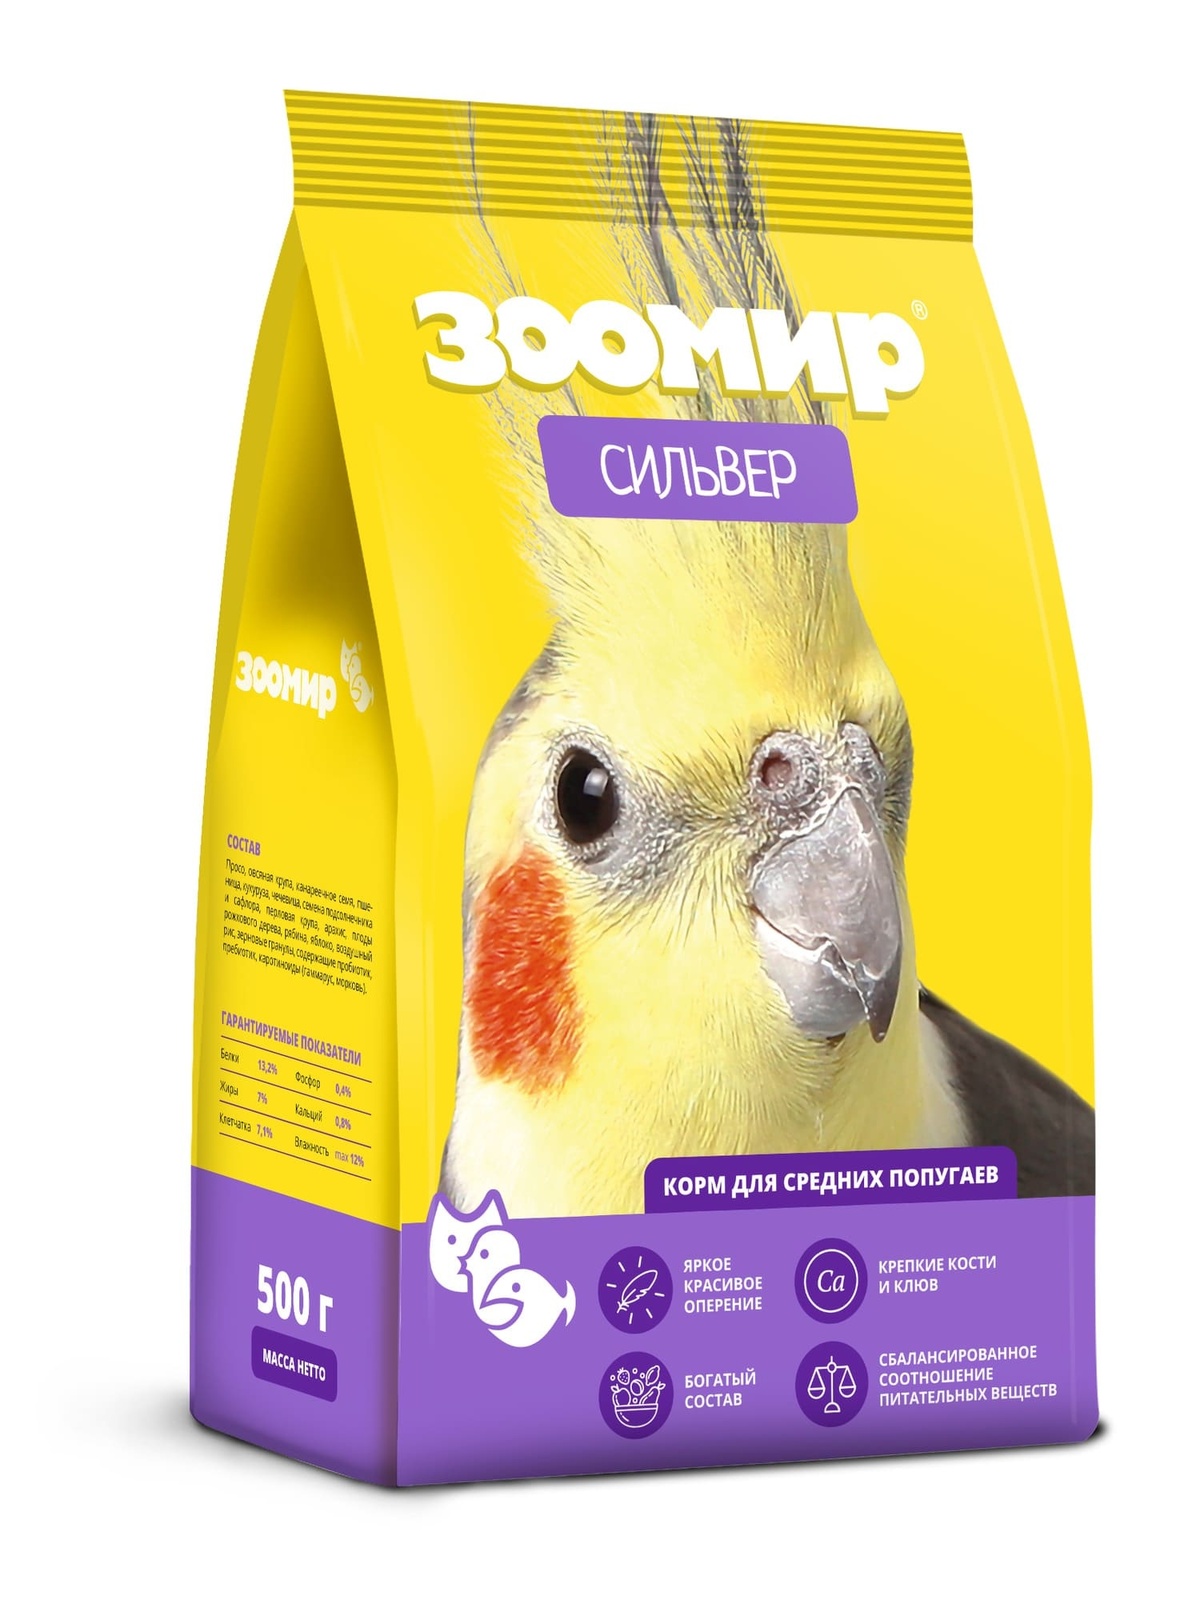 ЗООМИР ЗООМИР корм для средних попугаев Сильвер (5 кг) зоомир зоомир корм для птиц и грызунов овес пакет 5 кг